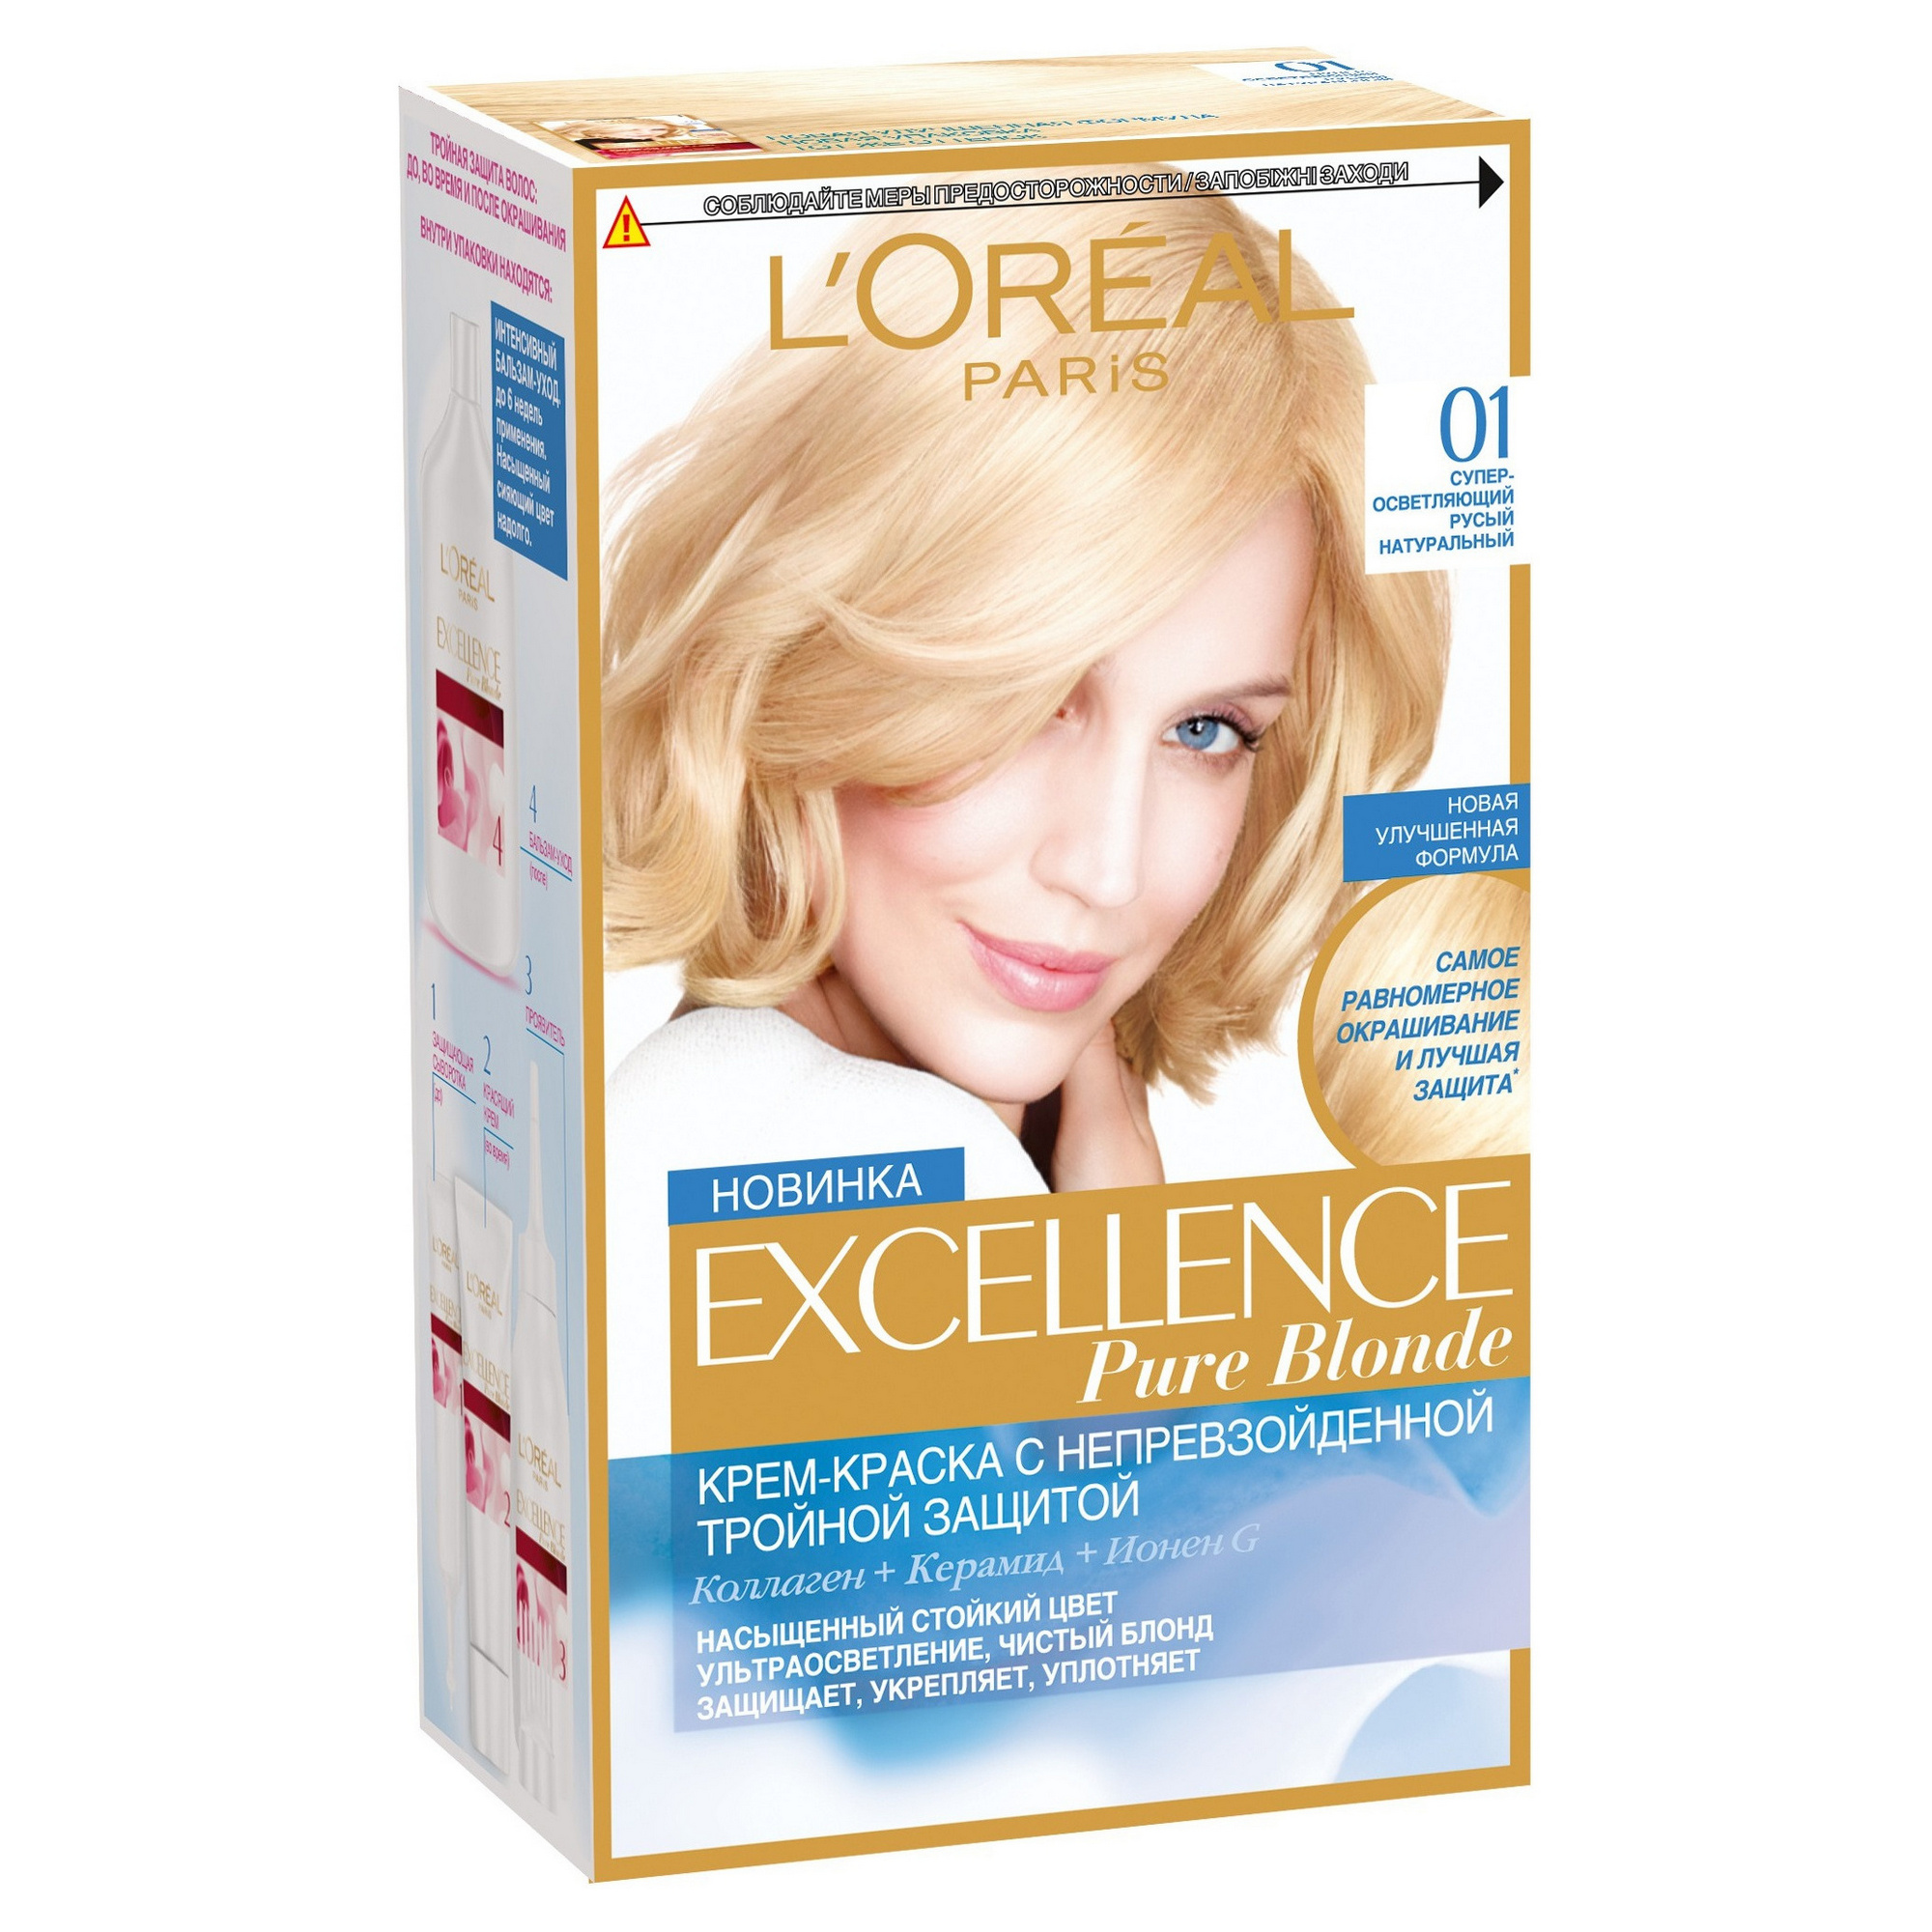 Купить Краска для волос L`Oreal Paris Excellence Суперосветляющий русый натуральный тон 01, L'Oreal Paris